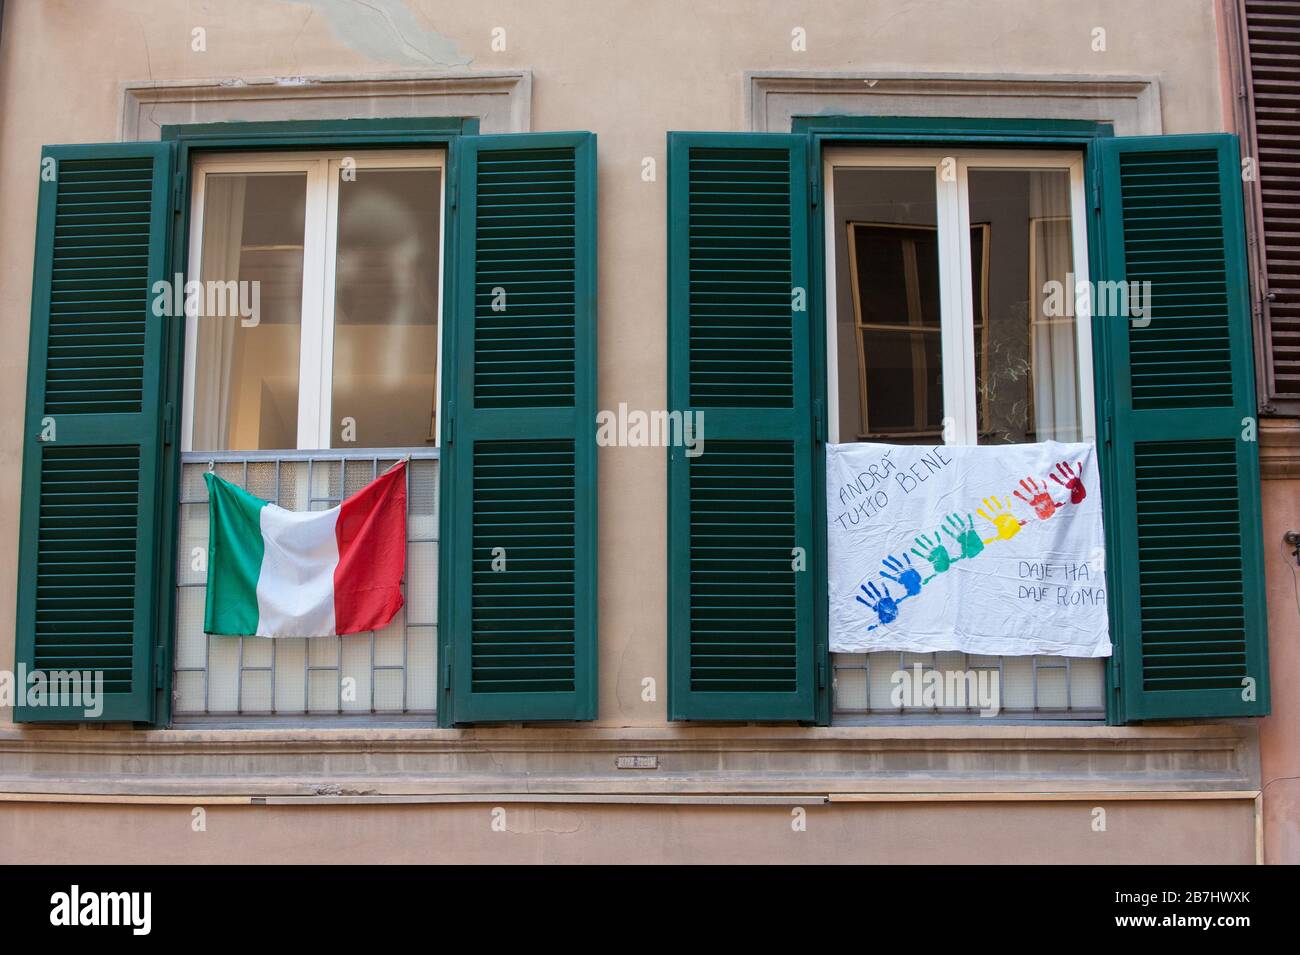 Roma al tempo del virus Corona. Bandiere tricolore e segnali di incoraggiamento dalle finestre di via Leonina. Foto Stock